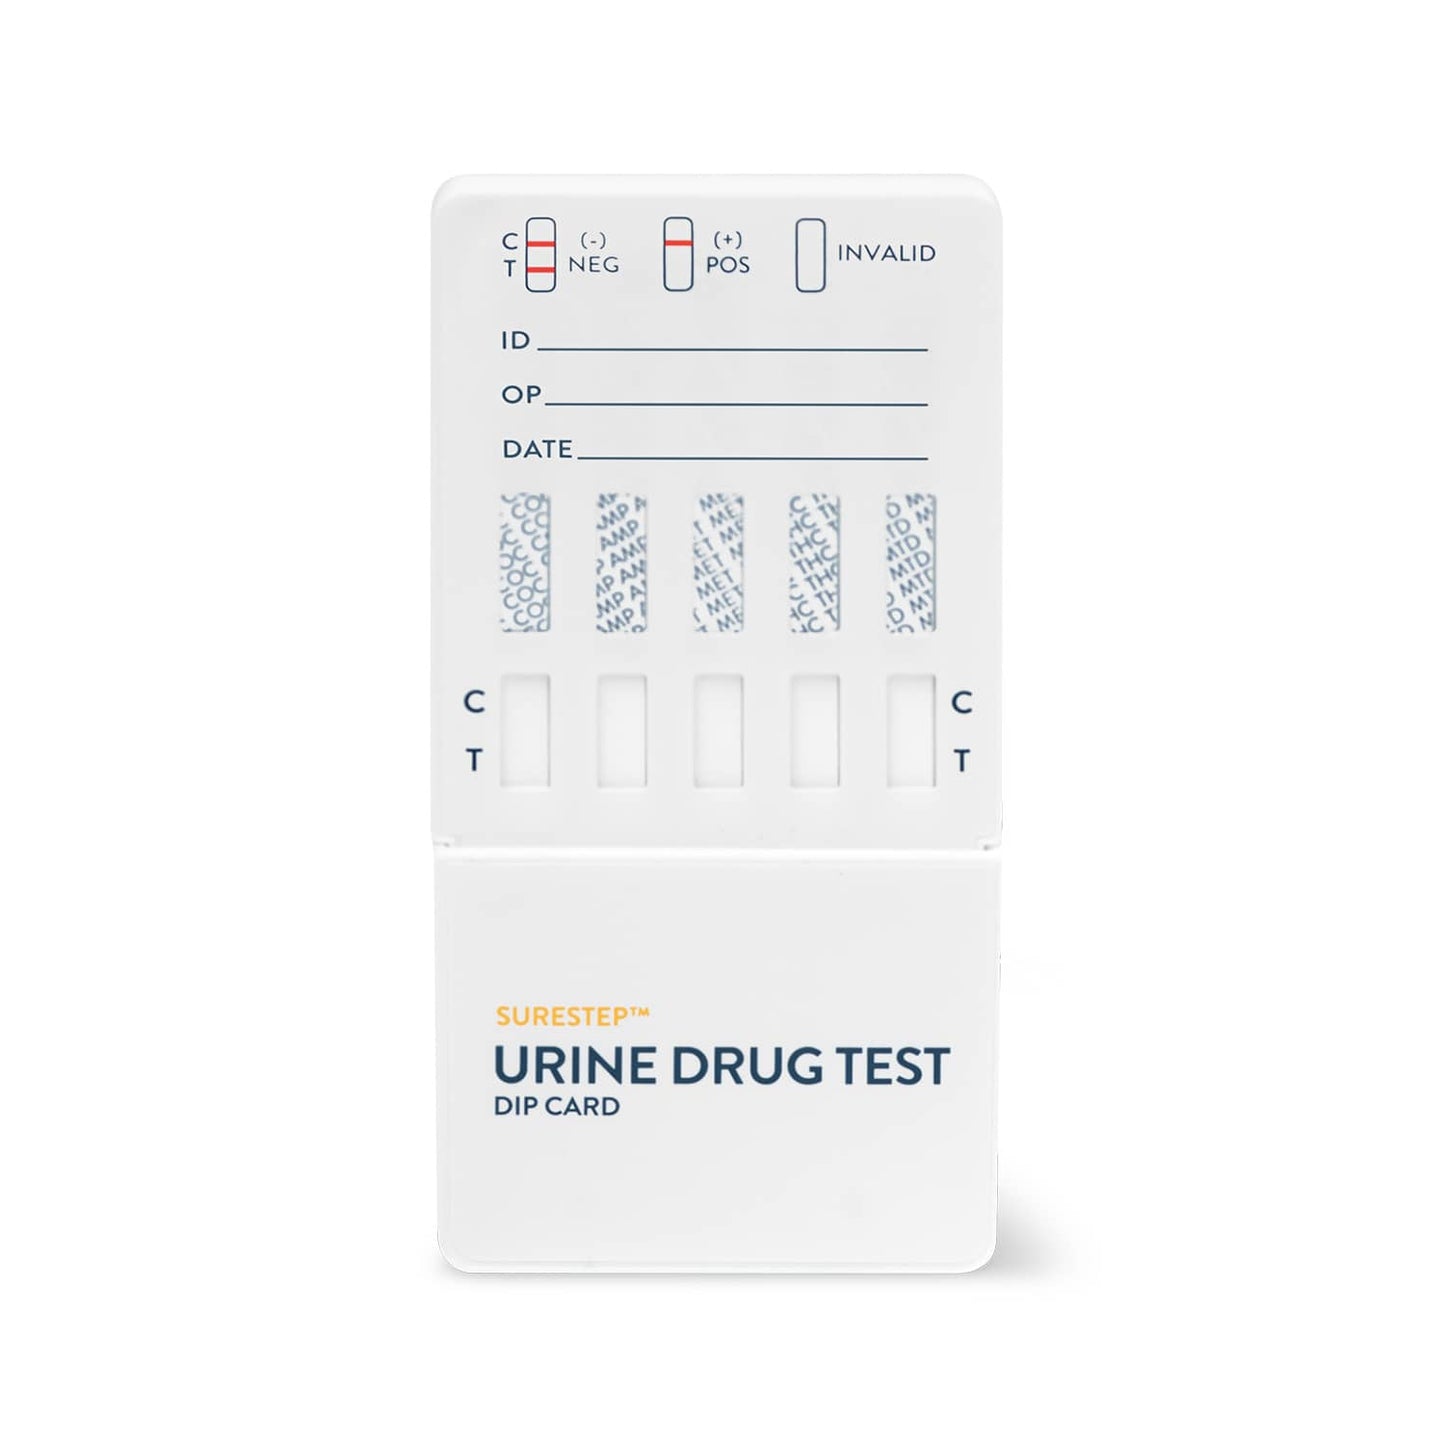 Surestep™ Urine Drug Test Dip Card (12) For Qualitative Detection Of Multiple Drugs In Urine 